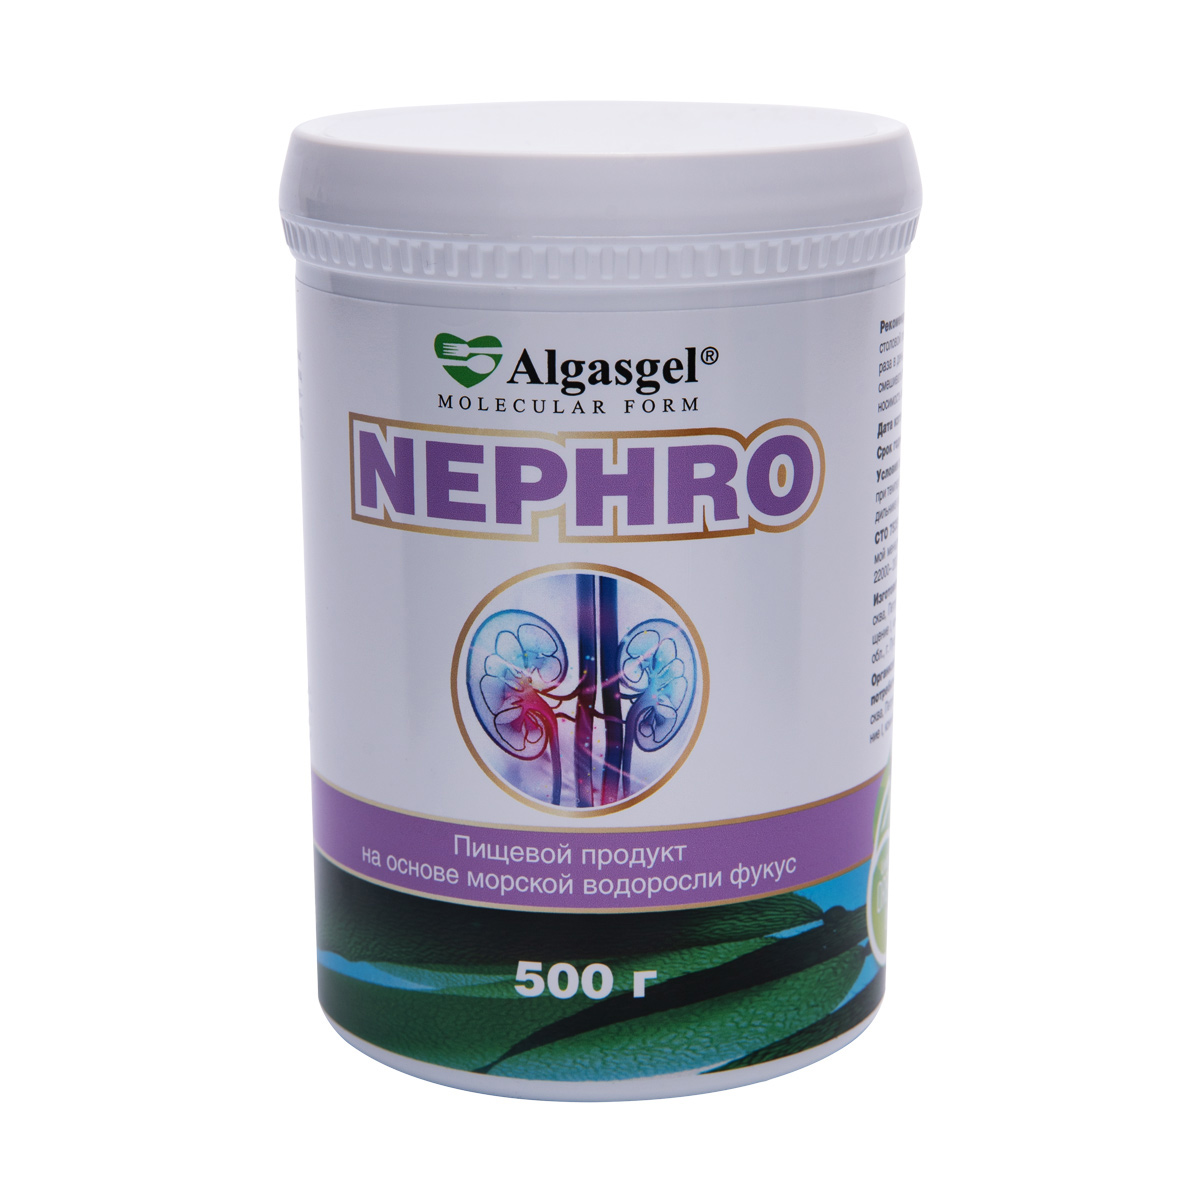 Algasgel Nephro для комплексного оздоровления почек и мочевыделительной системы (500 г) algasgel nephro для комплексного оздоровления почек и мочевыделительной системы 2 уп по 500 г 1 в подарок